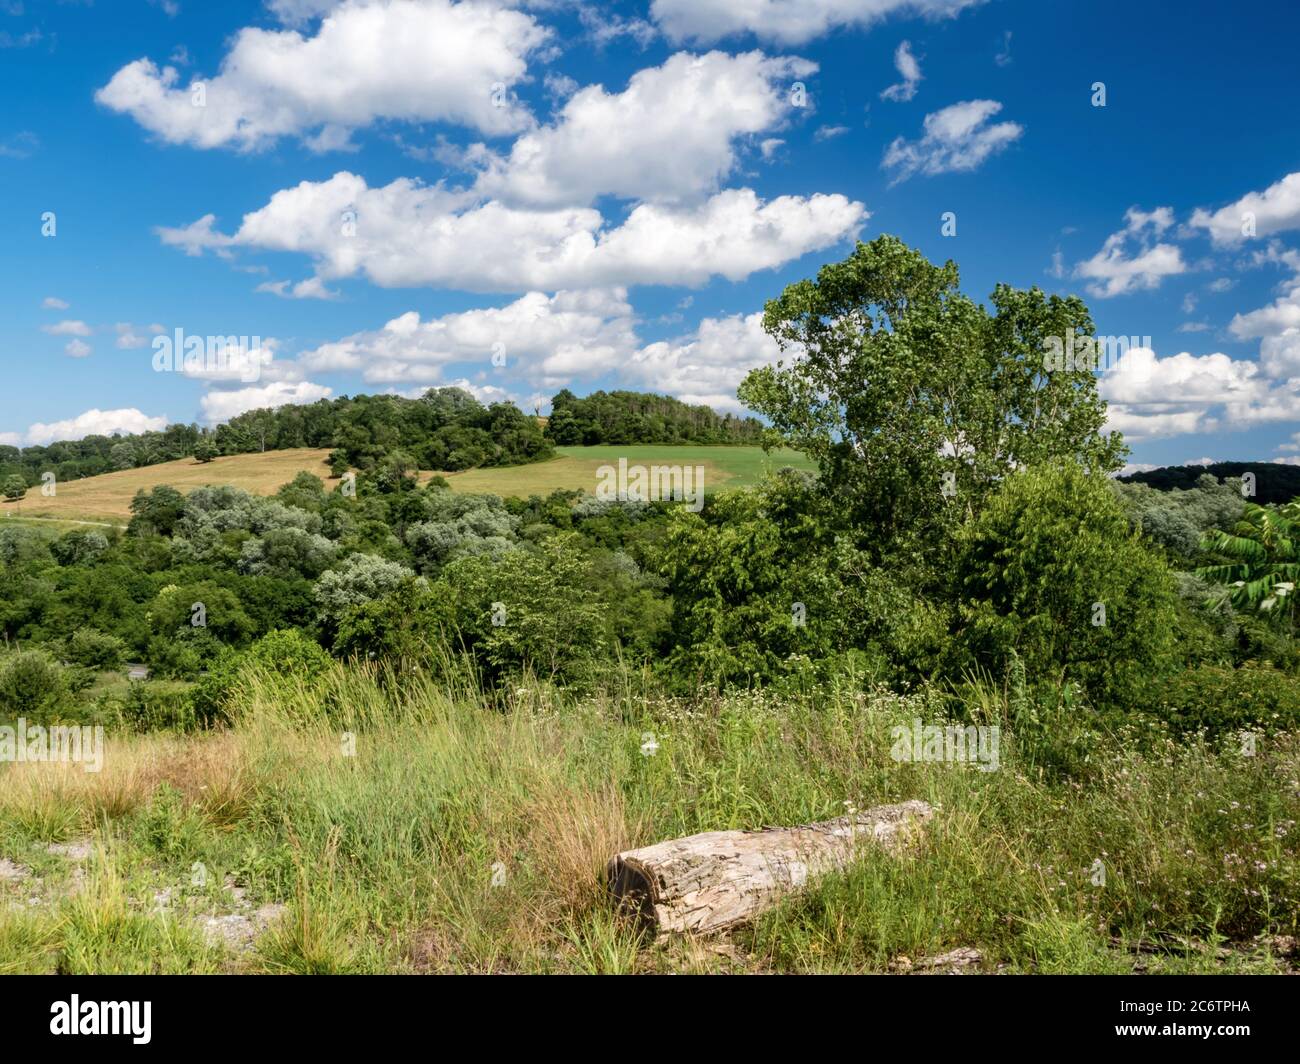 Foto paesaggistica nella Contea di Washington, nella Pennsylvania sud-occidentale, non lontano da Pittsburgh. Colline ondulate piene di campi verdi e alberi, con Foto Stock